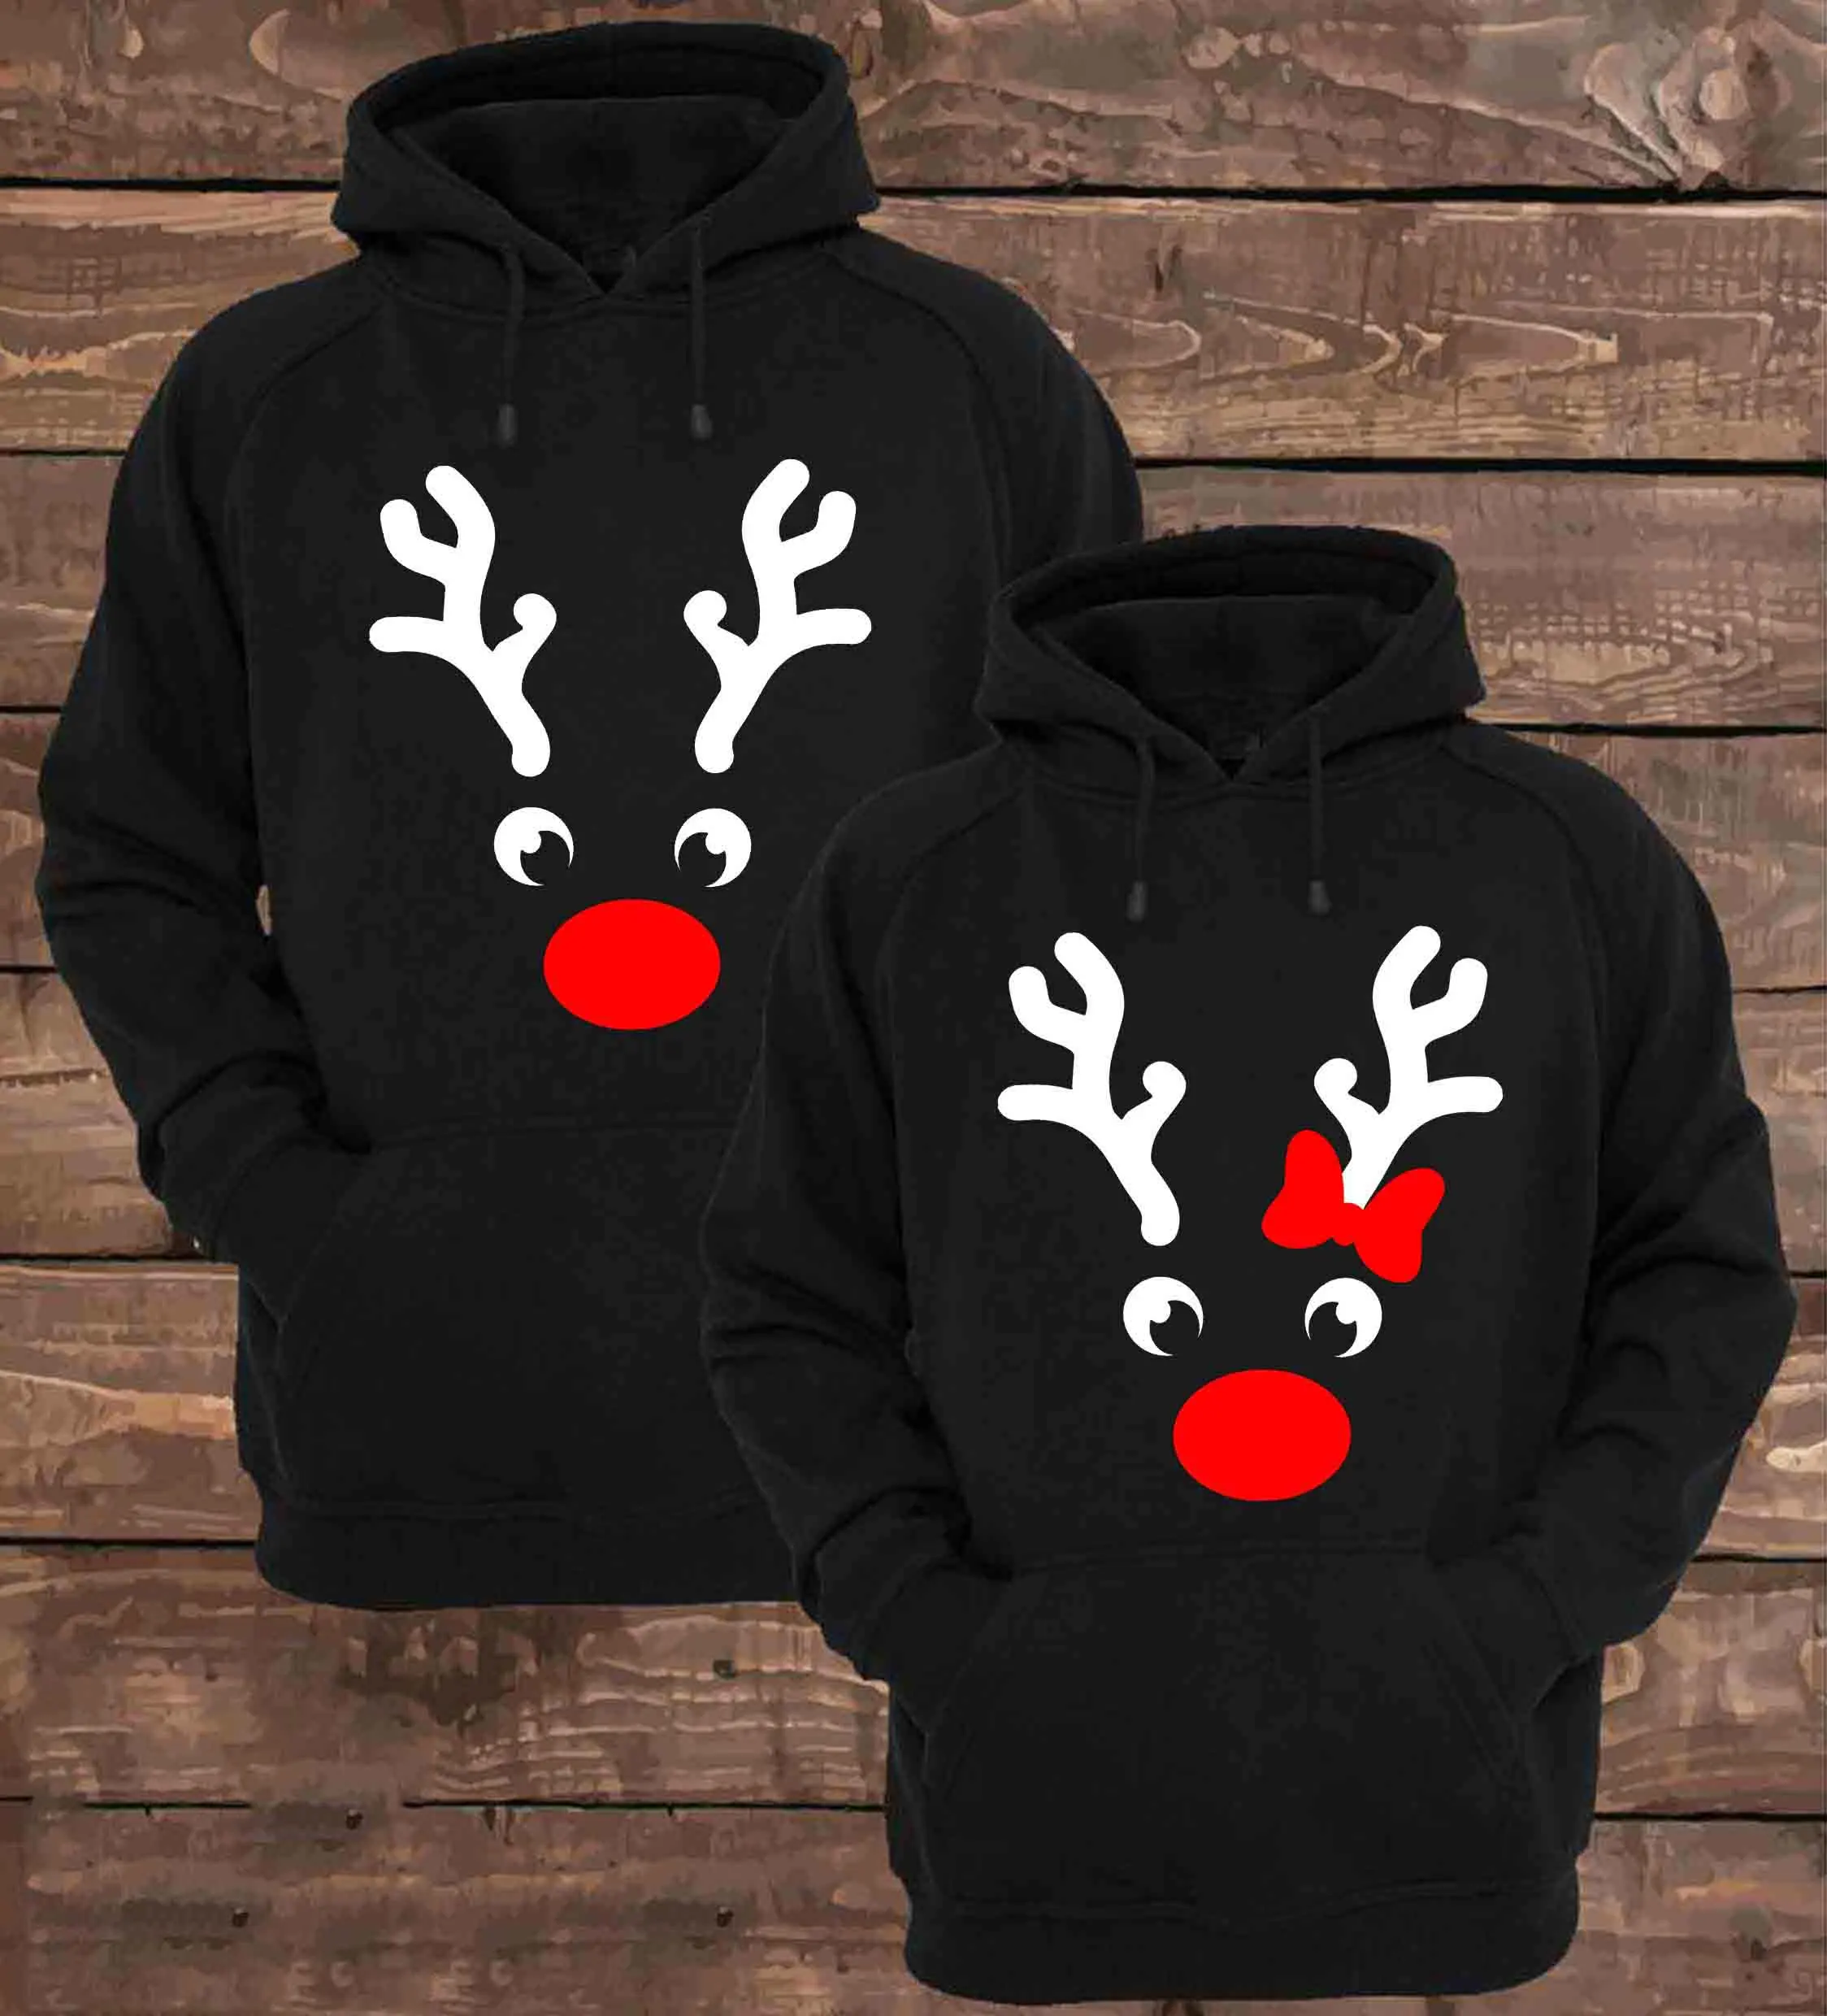 Рождественская пара толстовок, пуловер для женщин с принтом рога, Рождественский свитшот для мужчин, Зимние толстовки, повседневный черный спортивный костюм, одежда для вечеринок